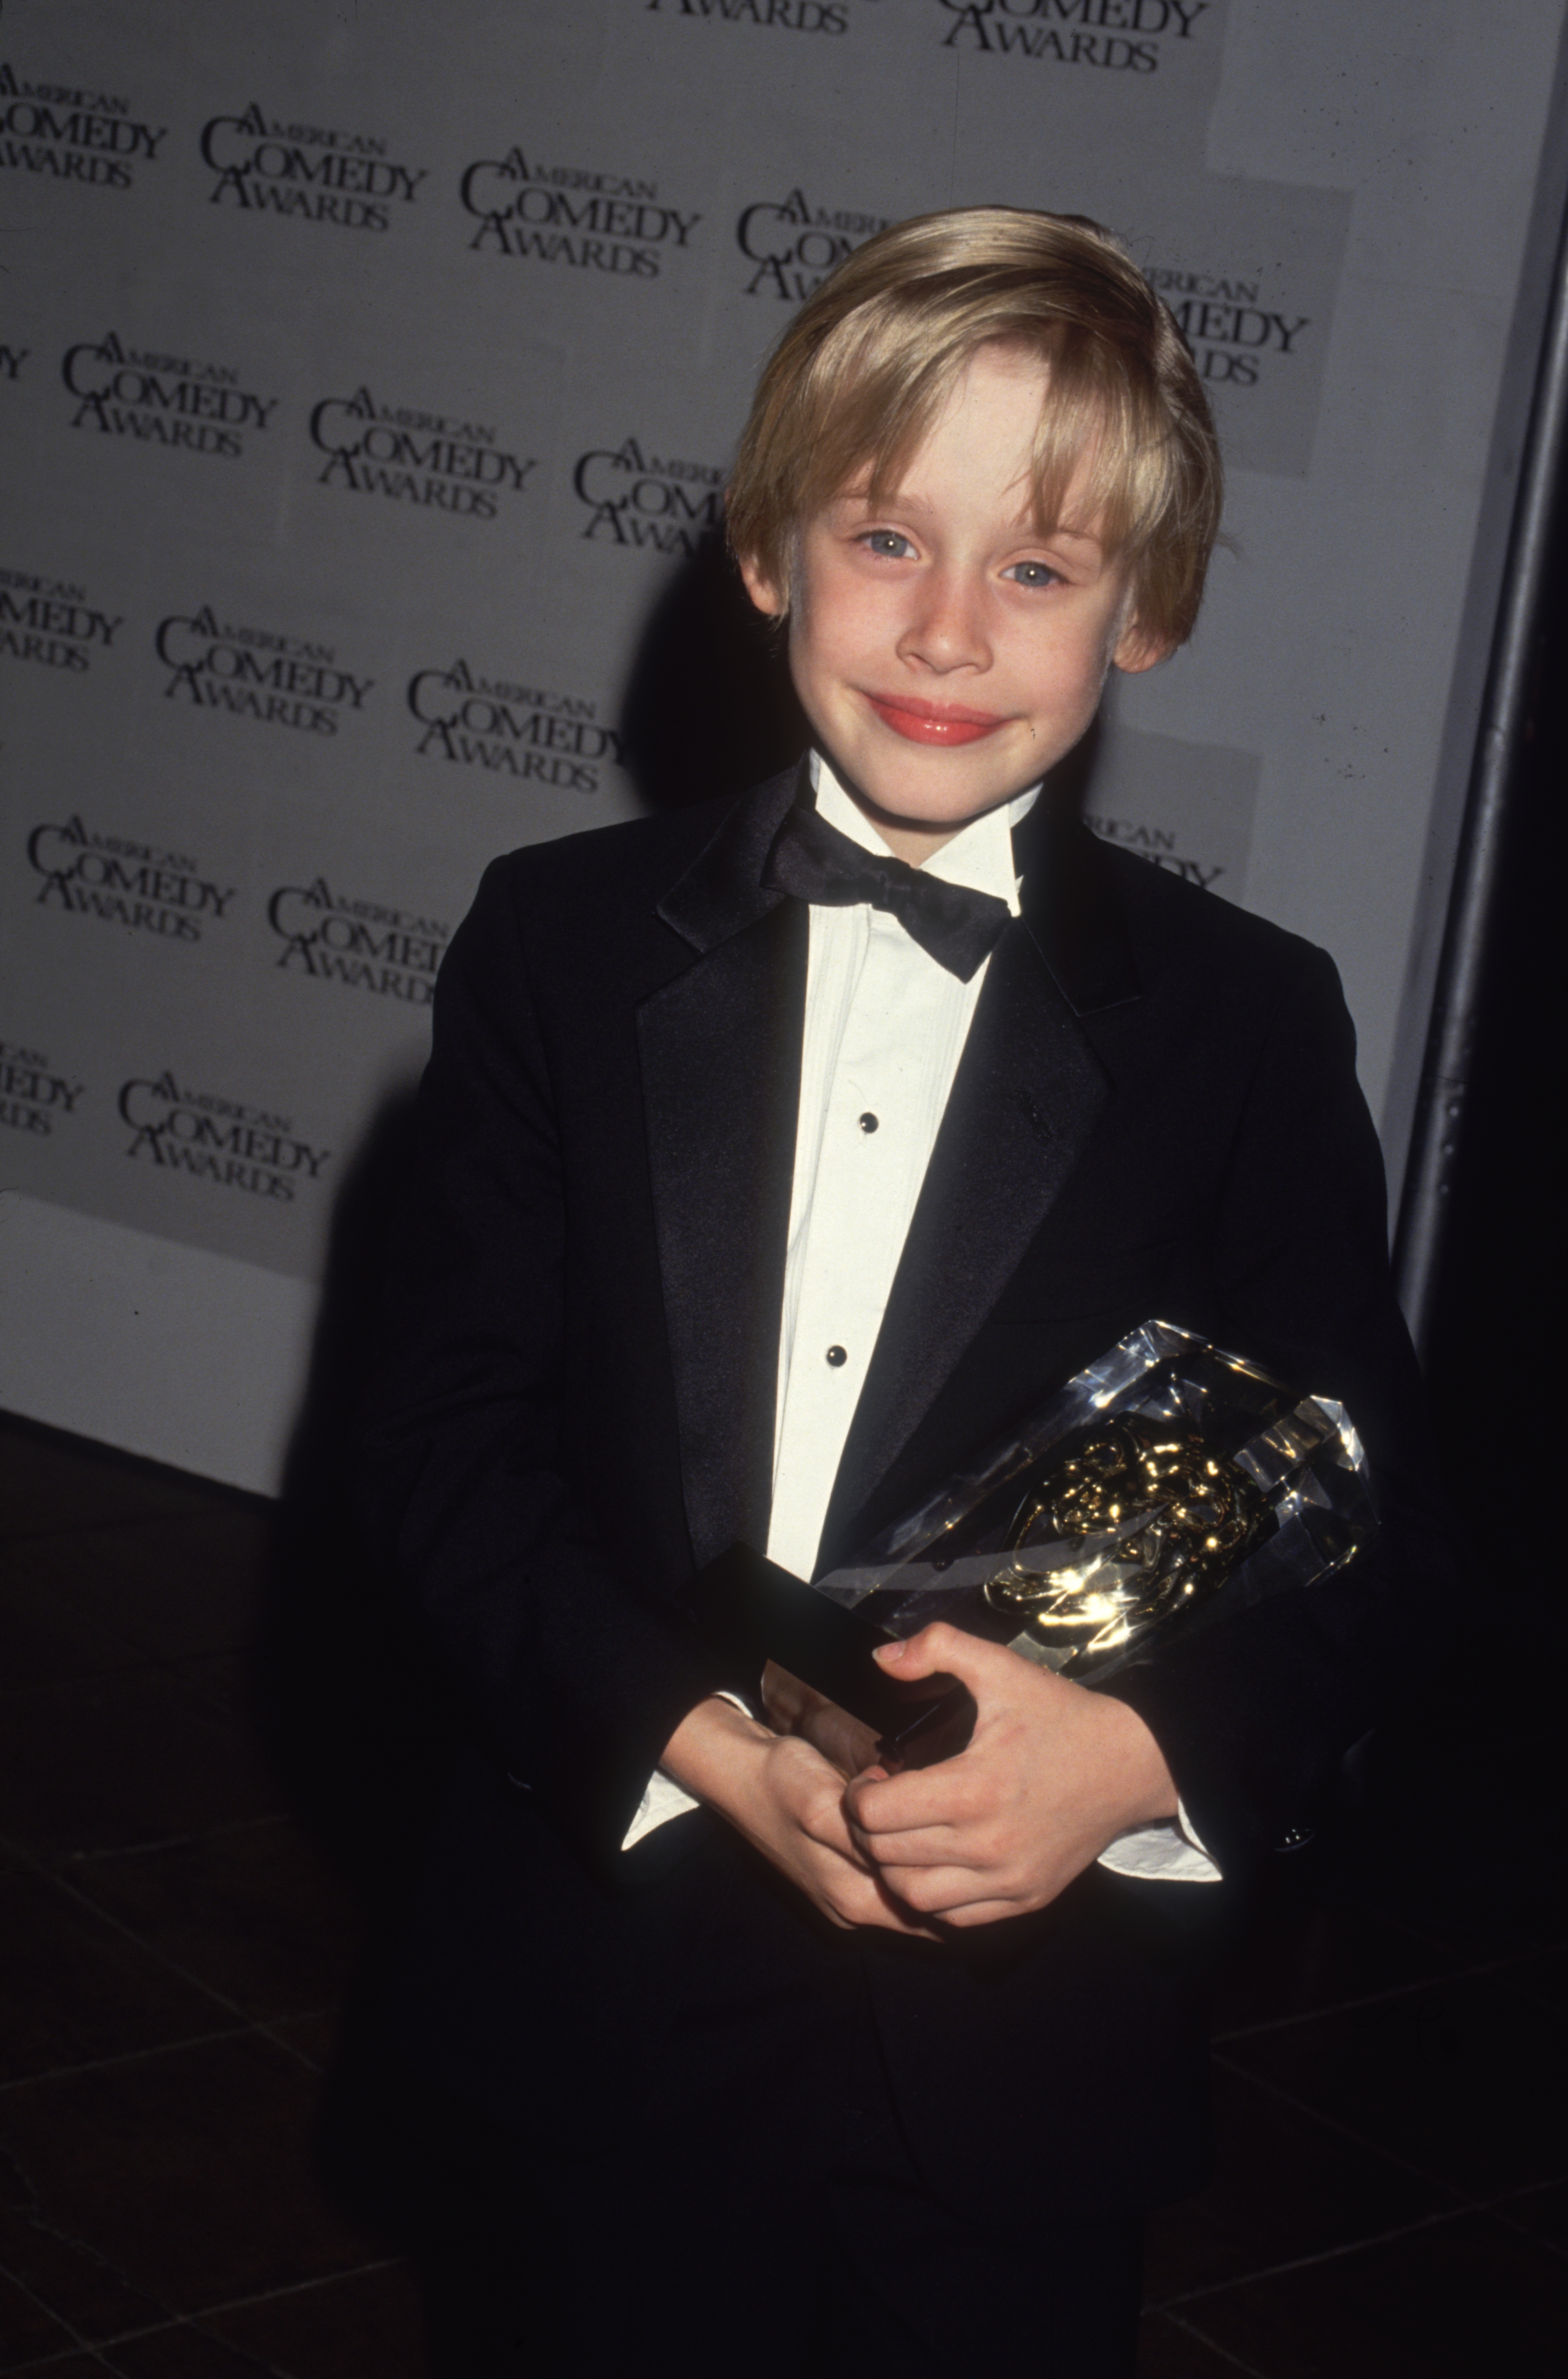 Macaulay Culkin en los Premios de la Comedia Americana en 1991 | Foto: Getty Images